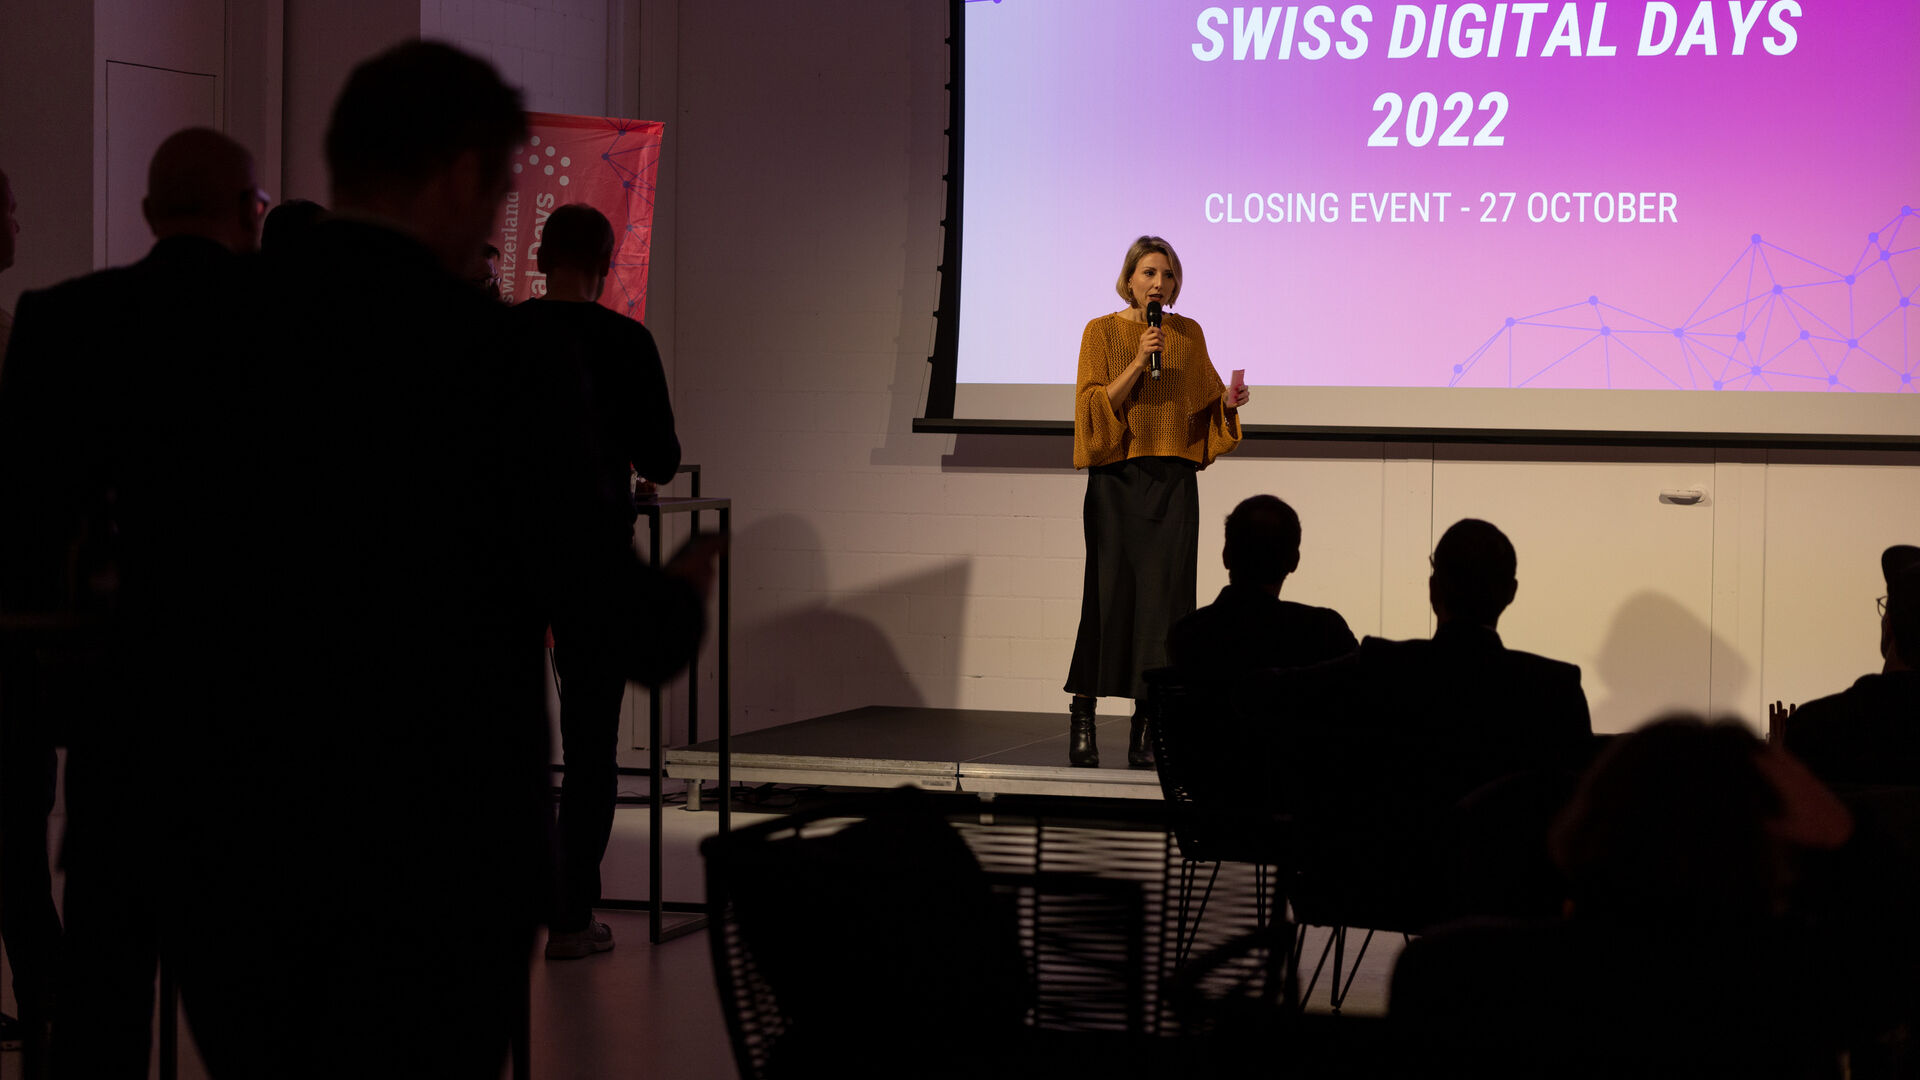 Swiss Digital Days: završni događaj "Swiss Digital Days" 2022. u Freiruumu u Zugu (Cug) 27. oktobra: govor Diane Engetschwiler, zamjenice generalnog direktora digitalswitzerland-a